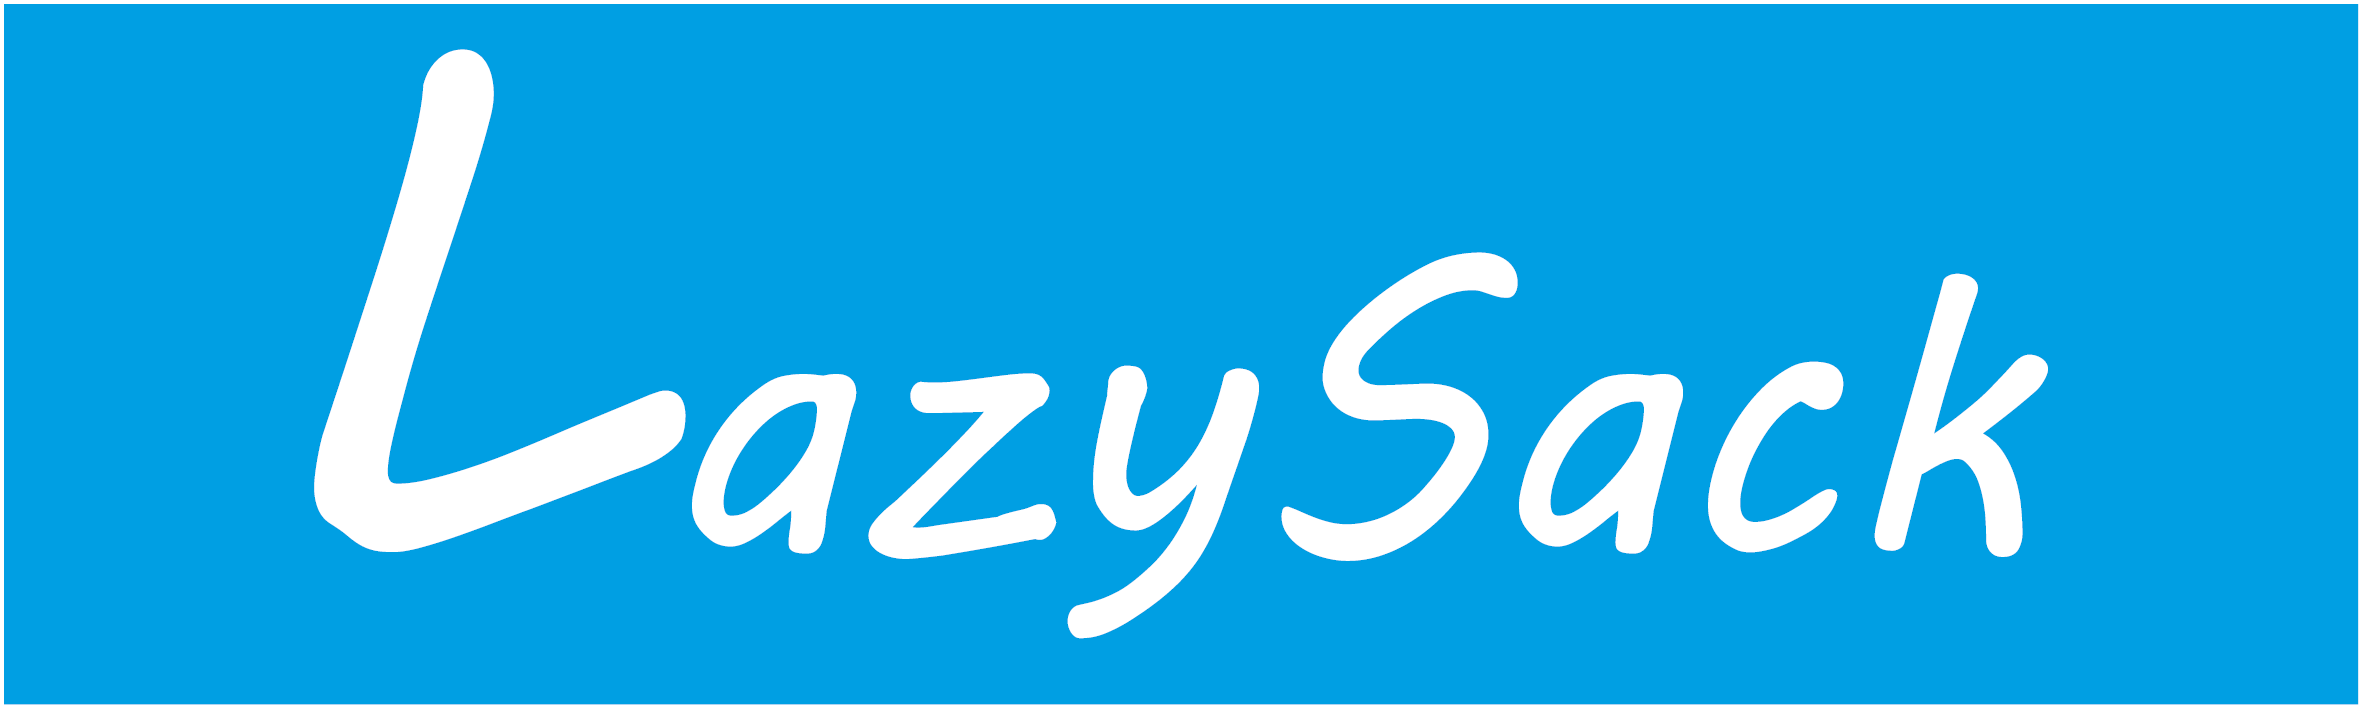 LazySack - För lata dagar i solen